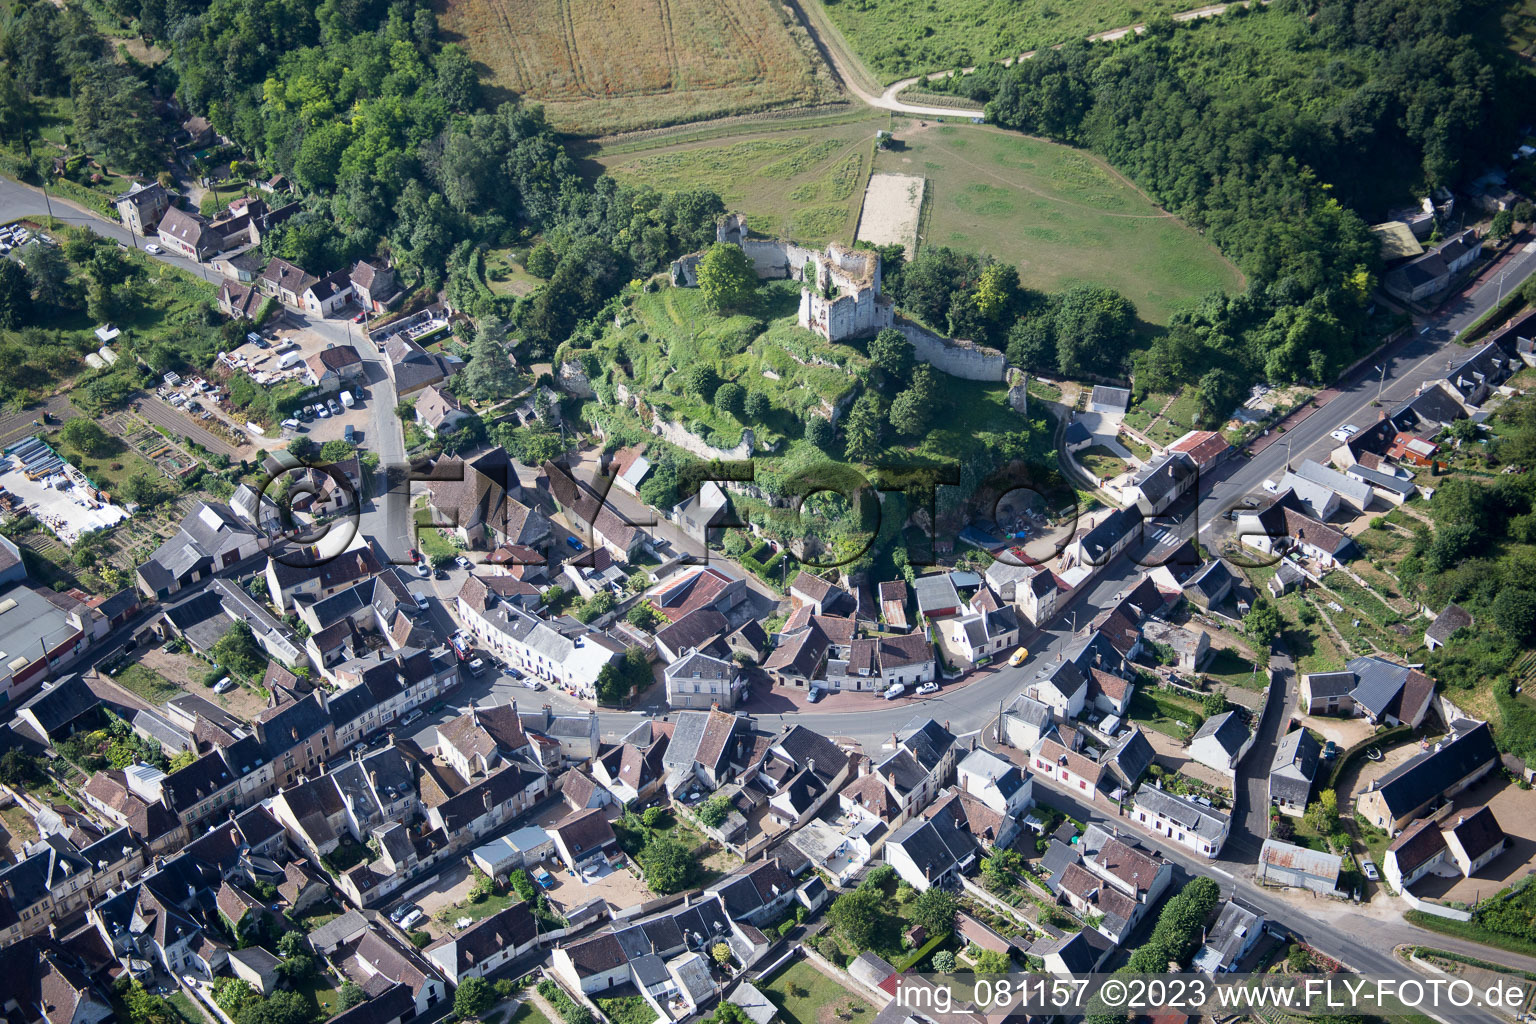 Drone image of Montoire-sur-le-Loir in the state Loir et Cher, France